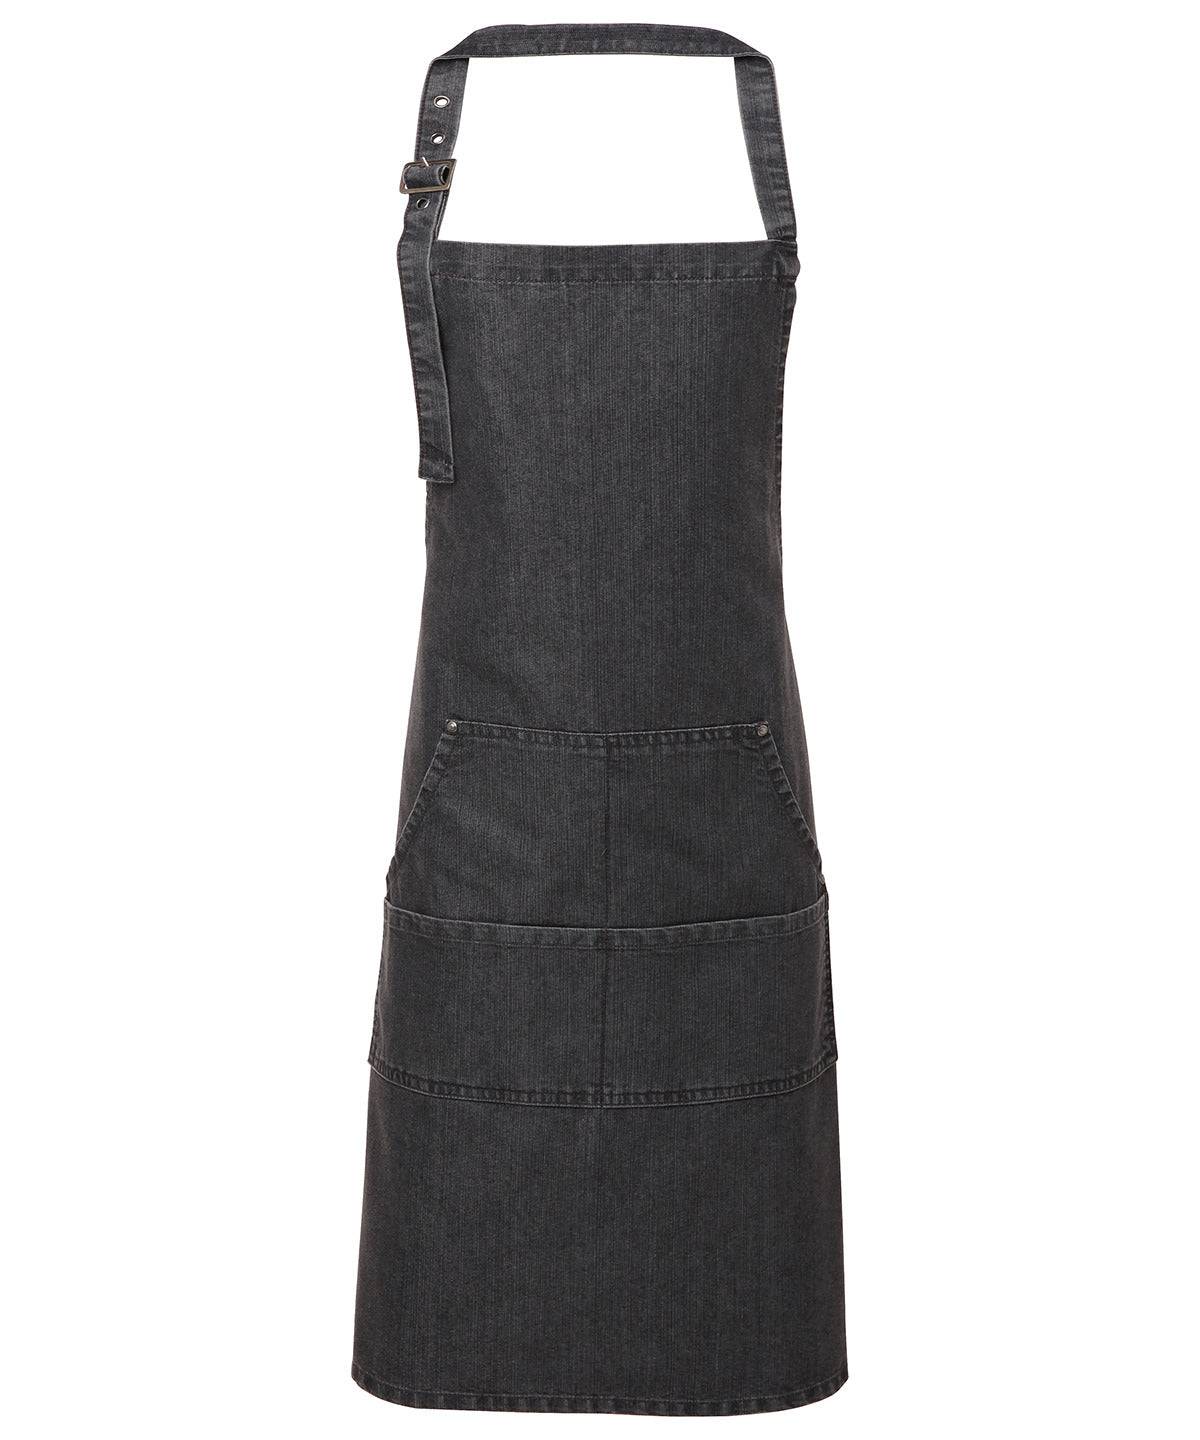 Black Denim - Jeans stitch bib apron